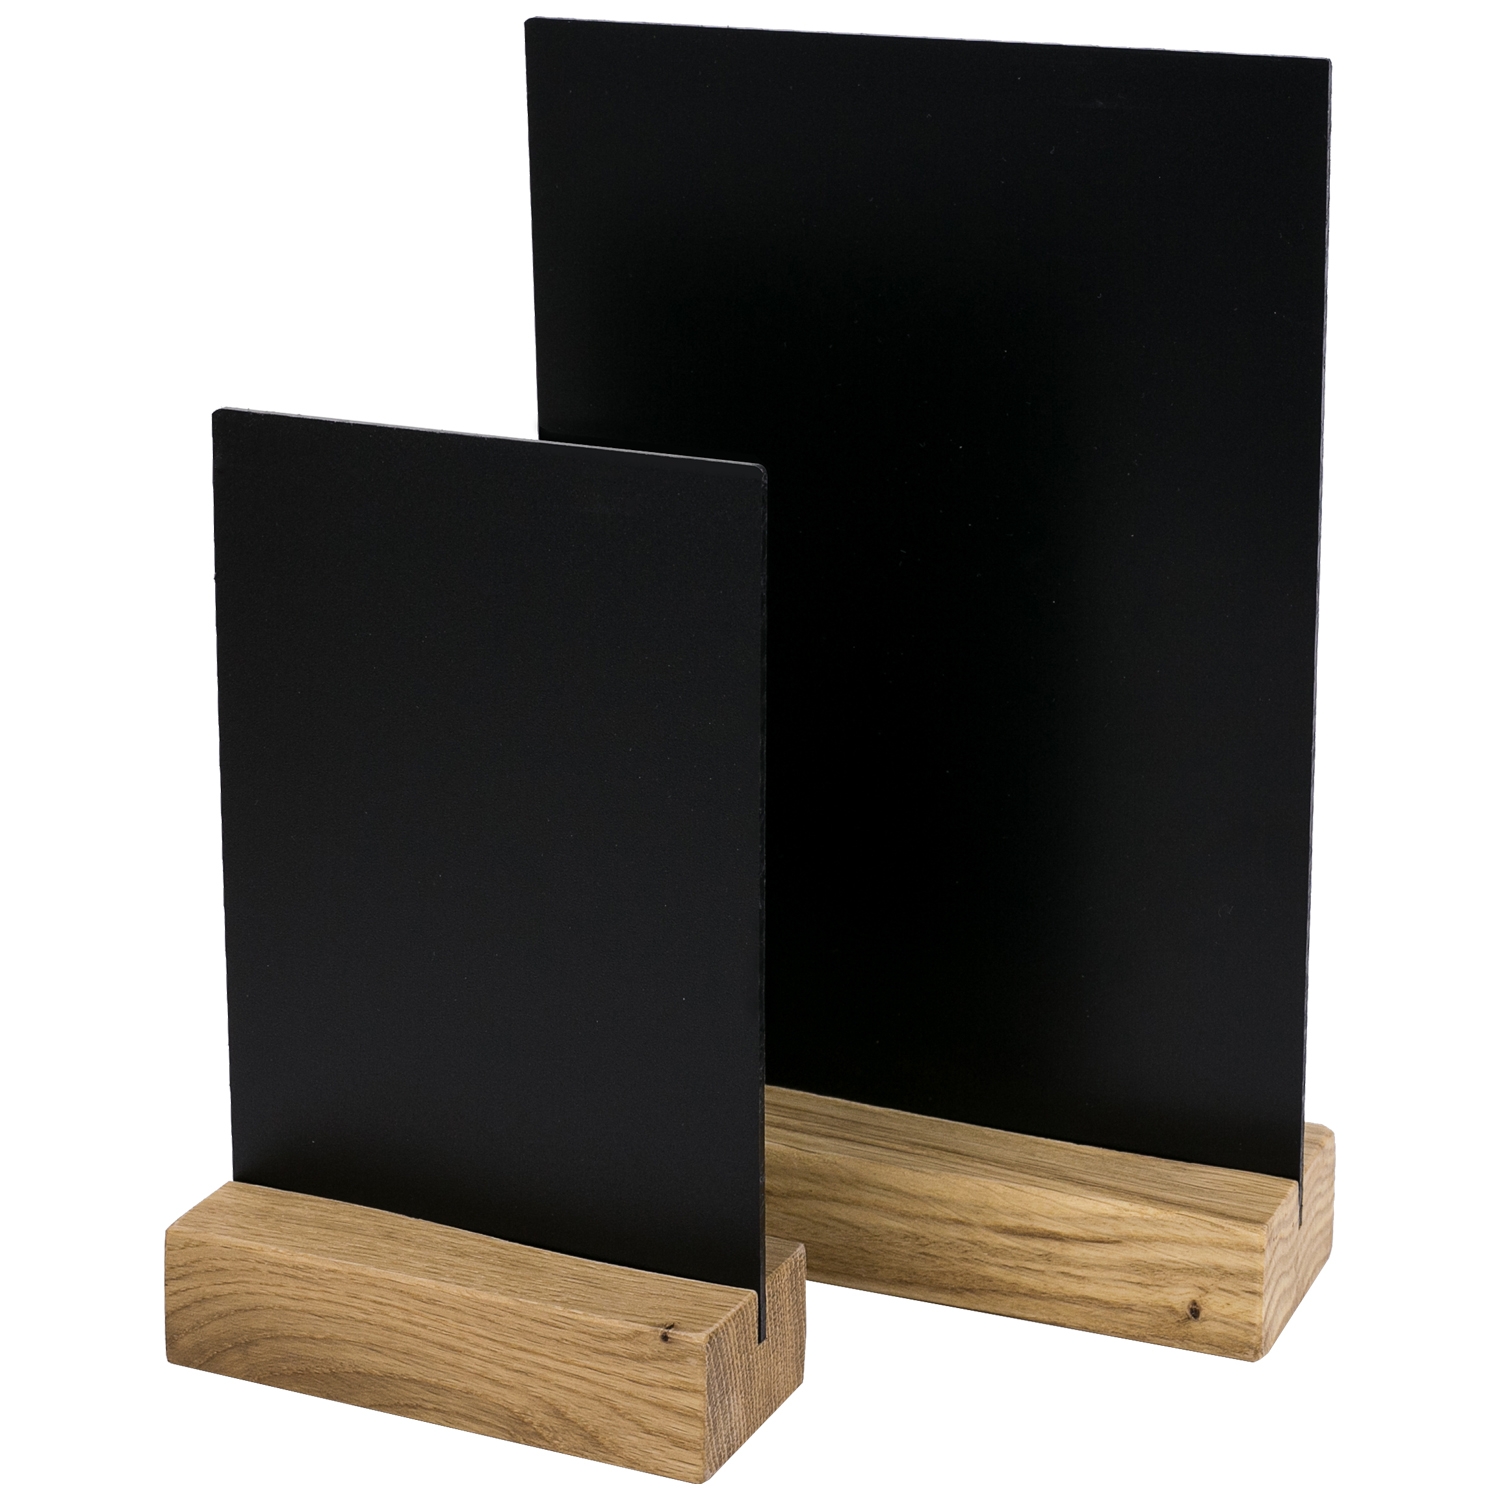 Kreidetafel mit Holzfuß als Tischaufsteller von HMF in DIN A6 Hochformat in Schwarz